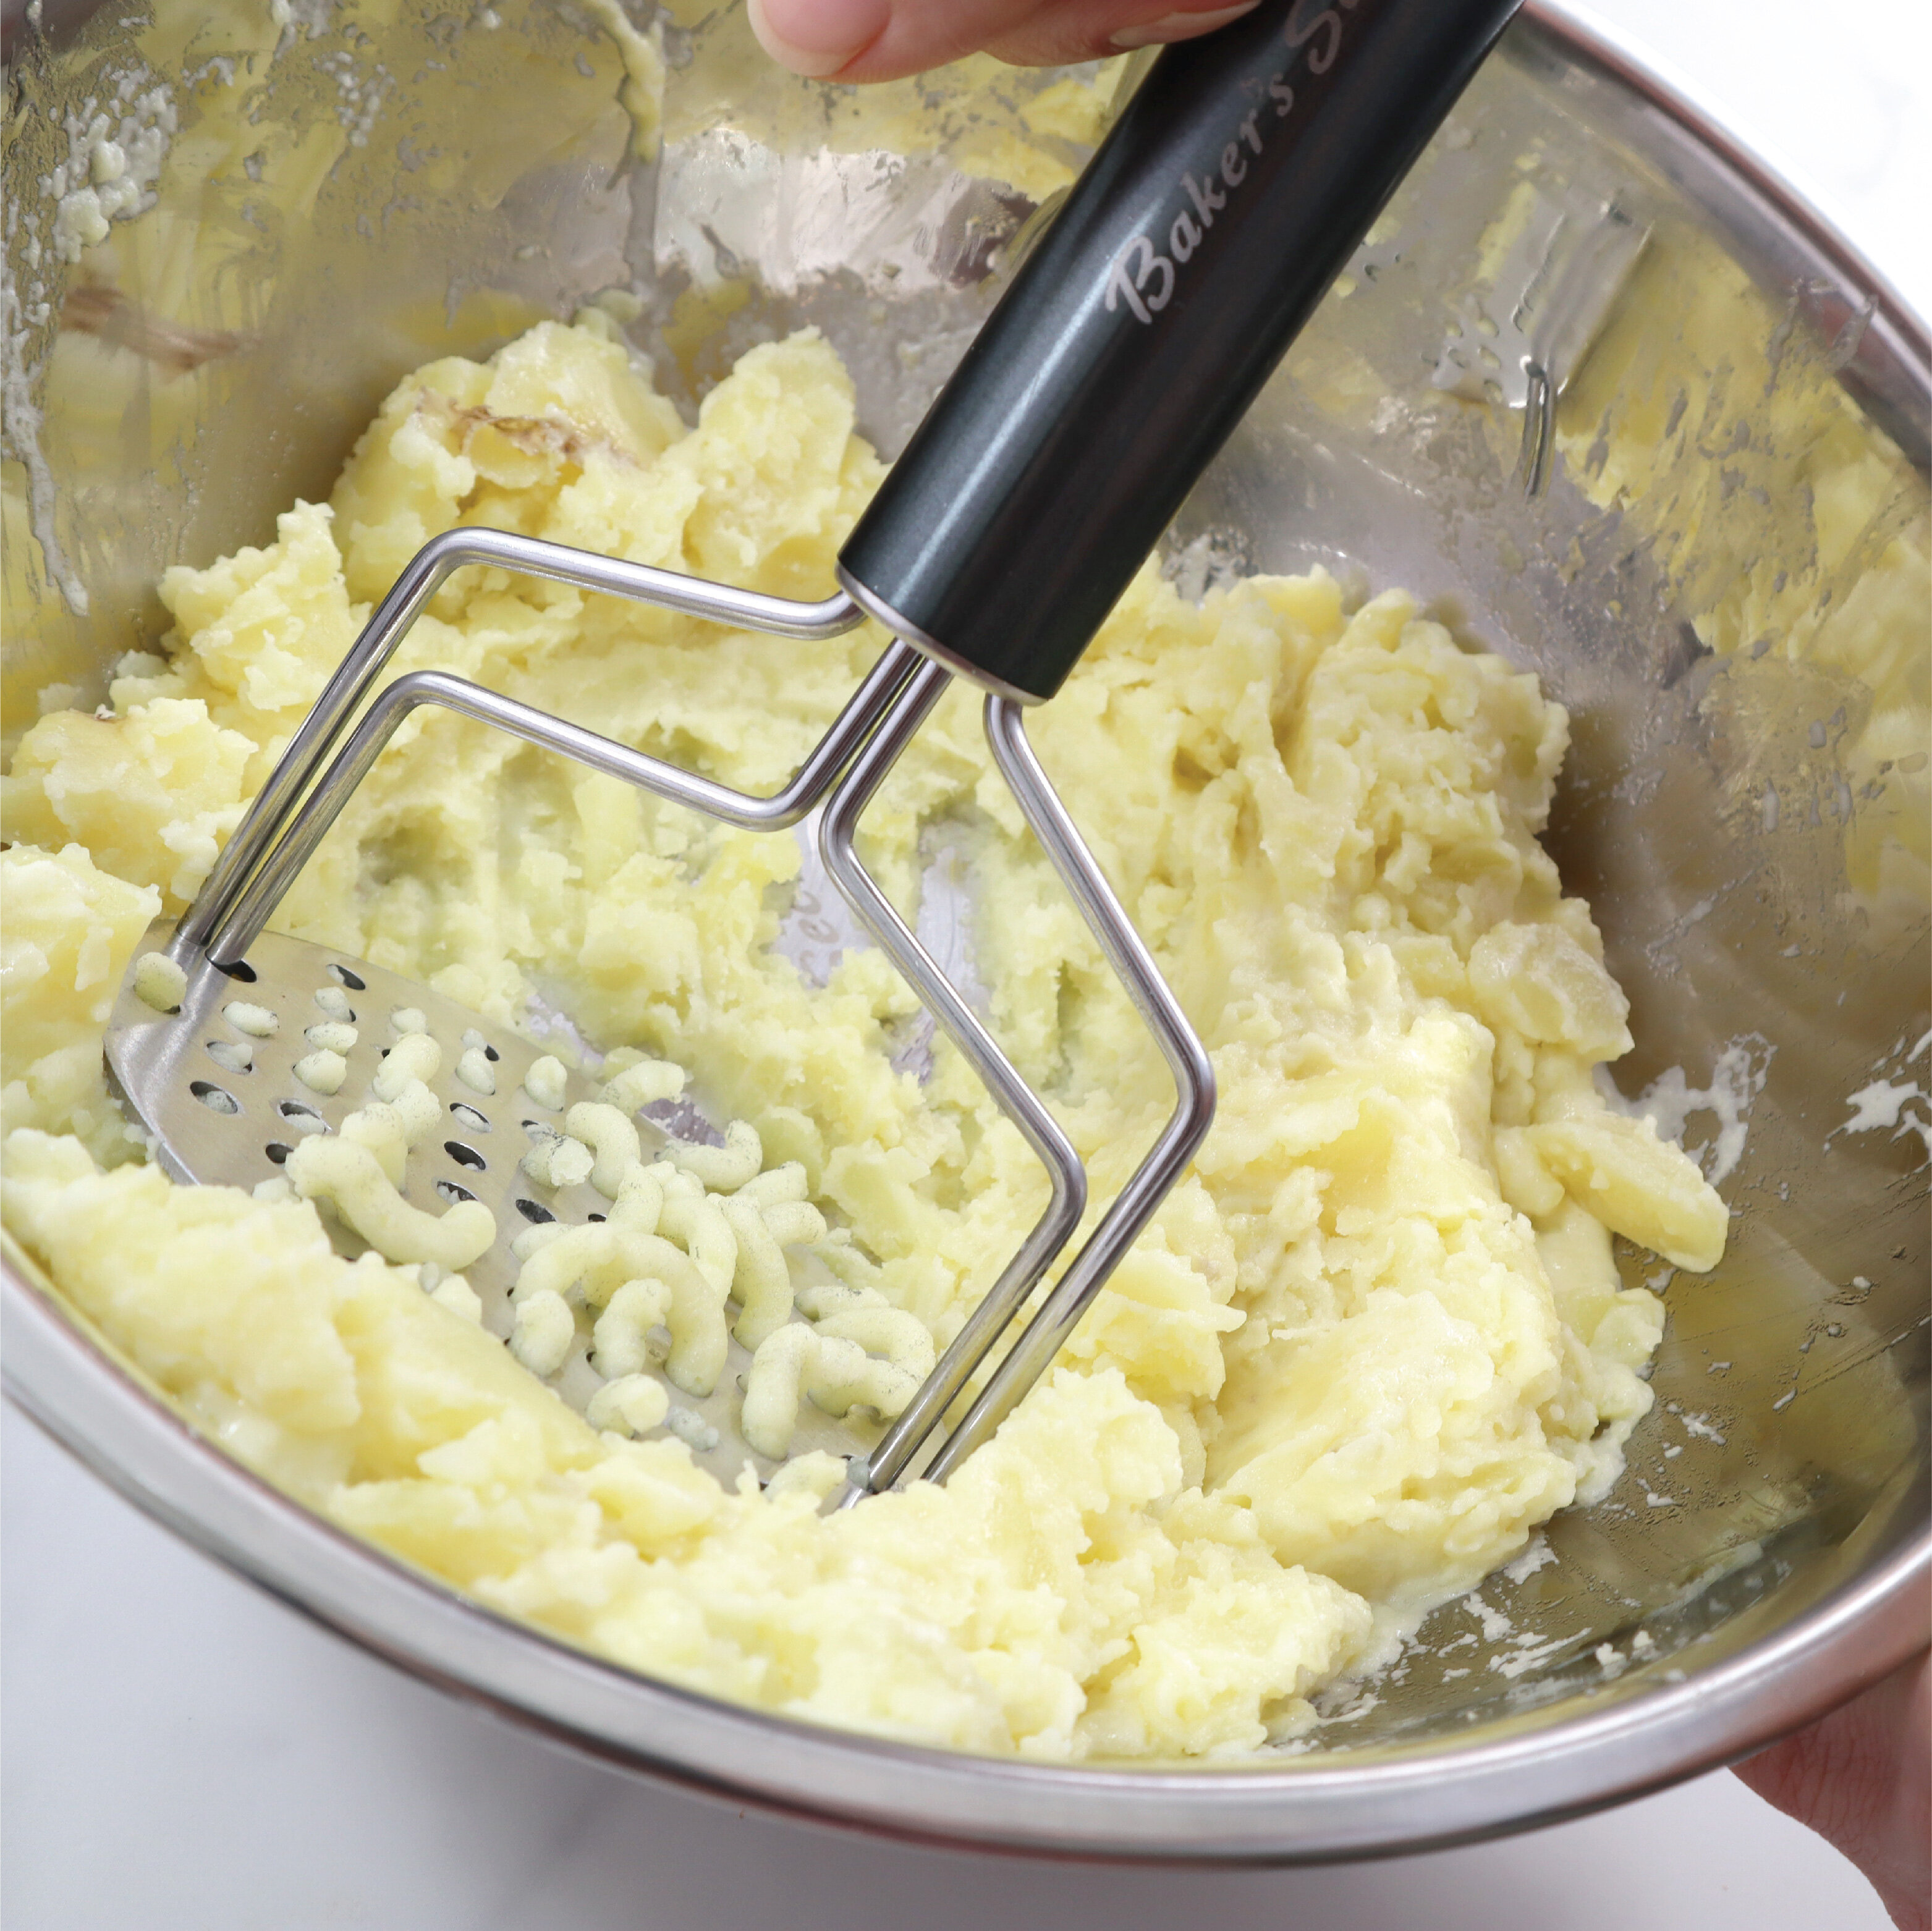 Buy Henckels Cooking Tools Potato masher